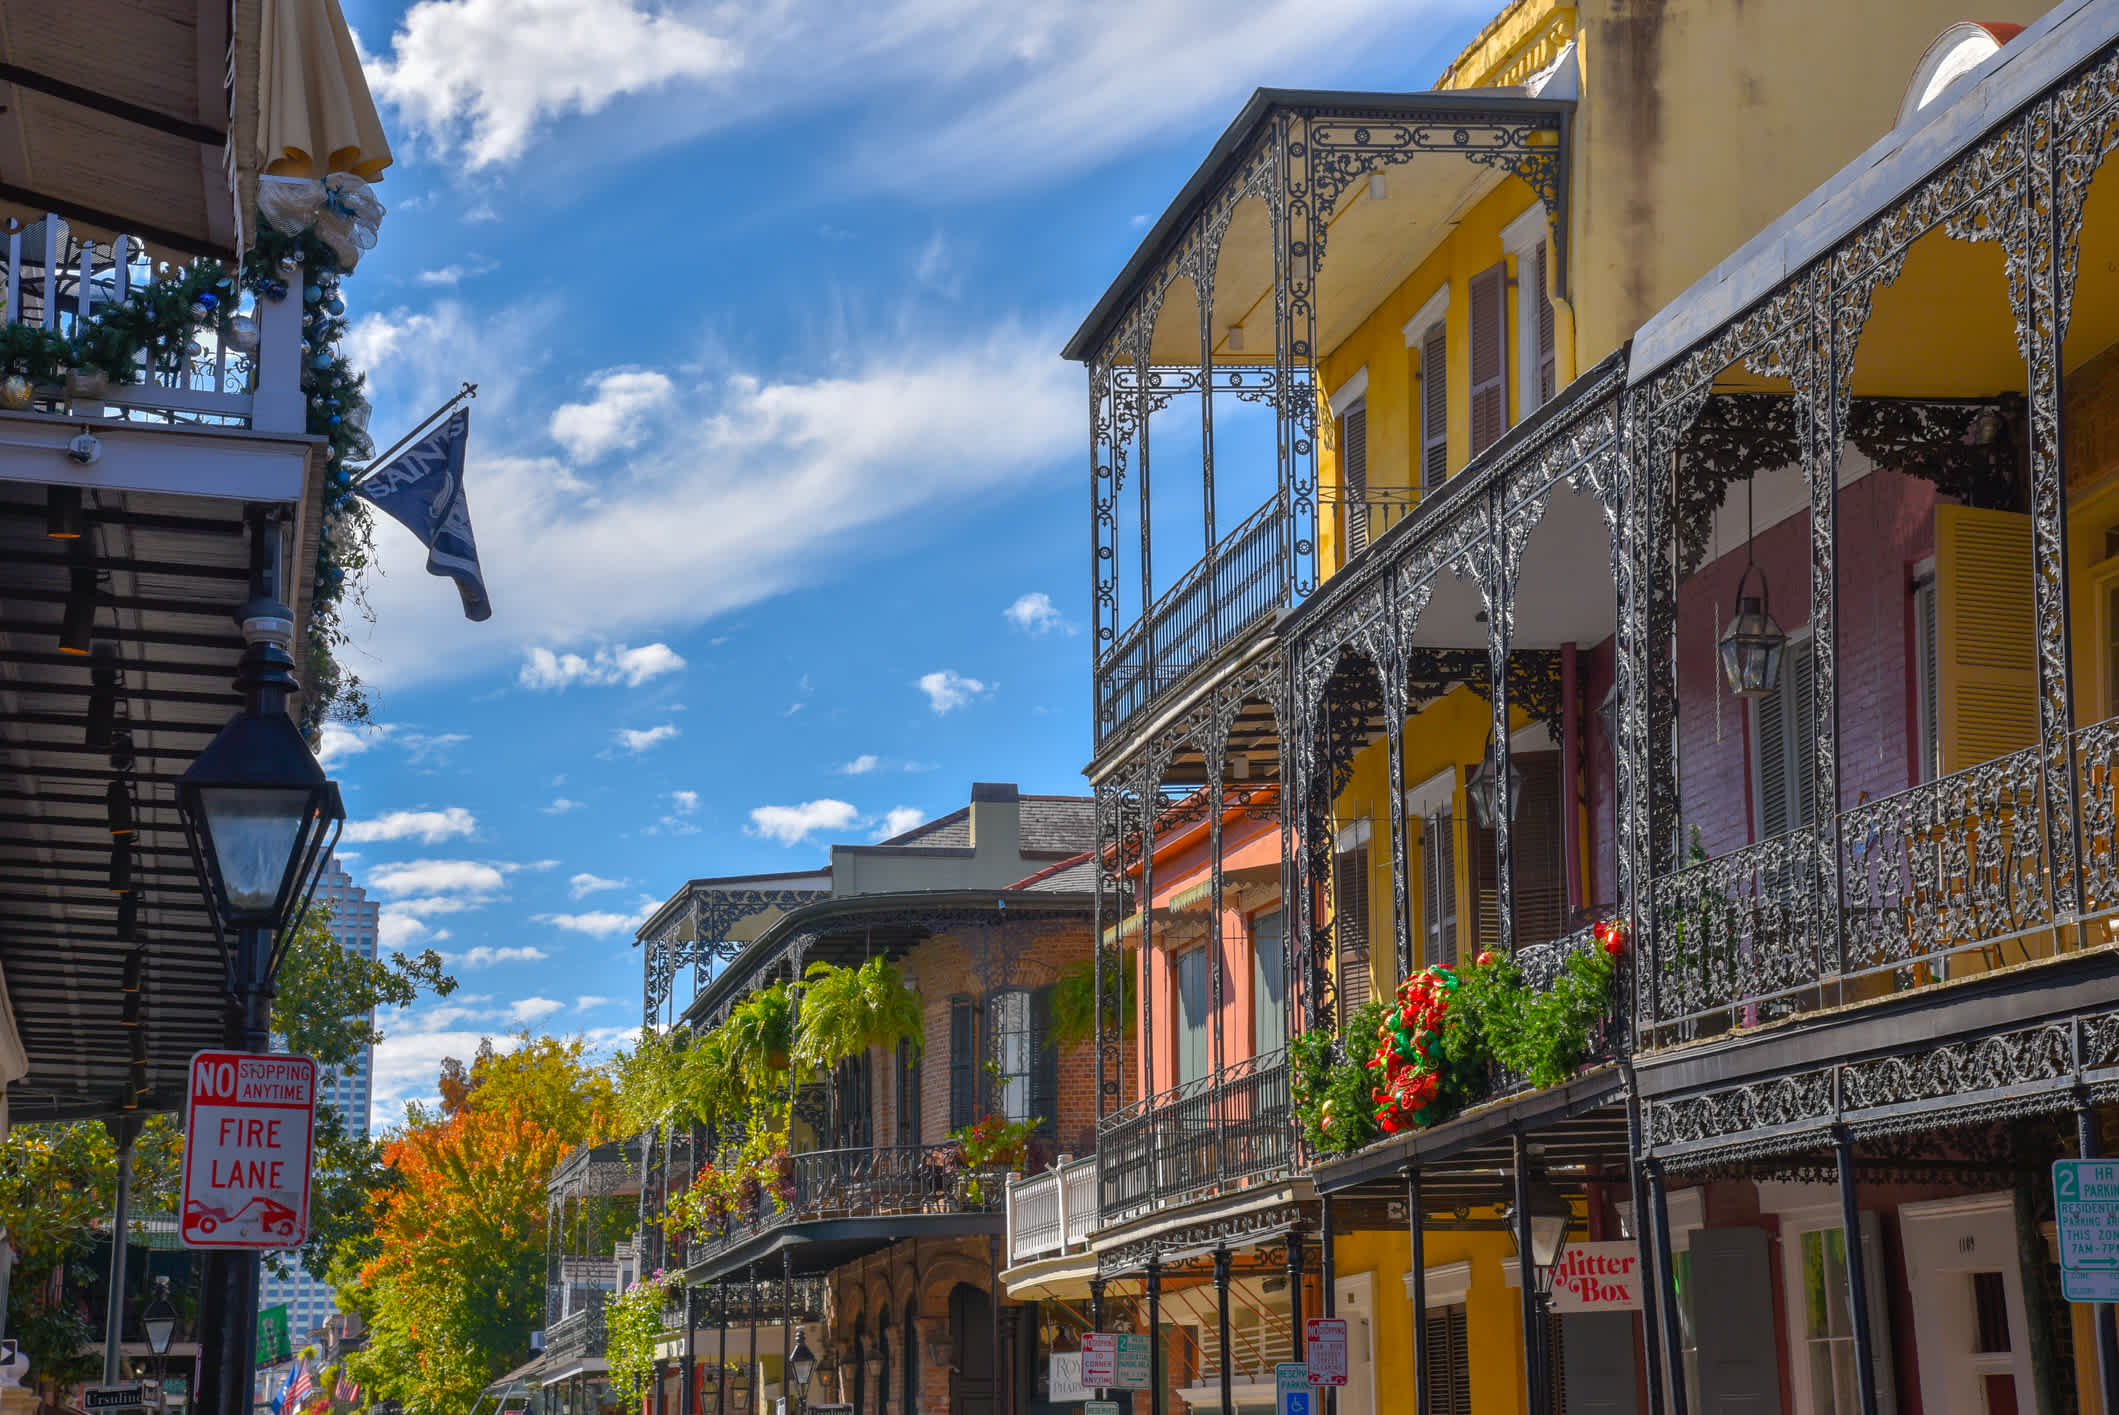 Prise en photo d'une rue traditionnelle dans le quartier français de la Nouvelle-Orléans pendant un voyage le long de la Route du Blues.